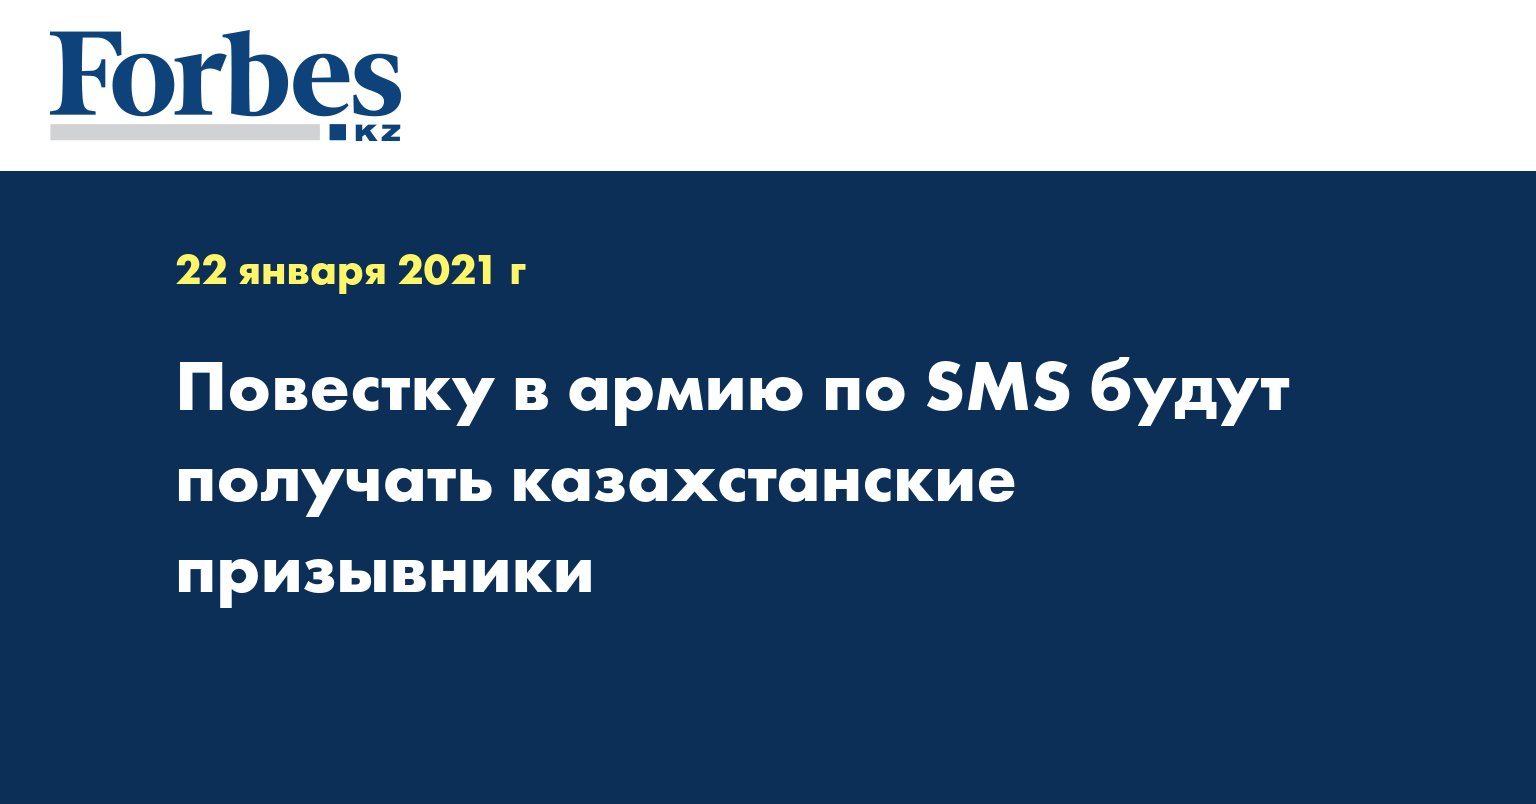 Повестку в армию по SMS будут получать казахстанские призывники